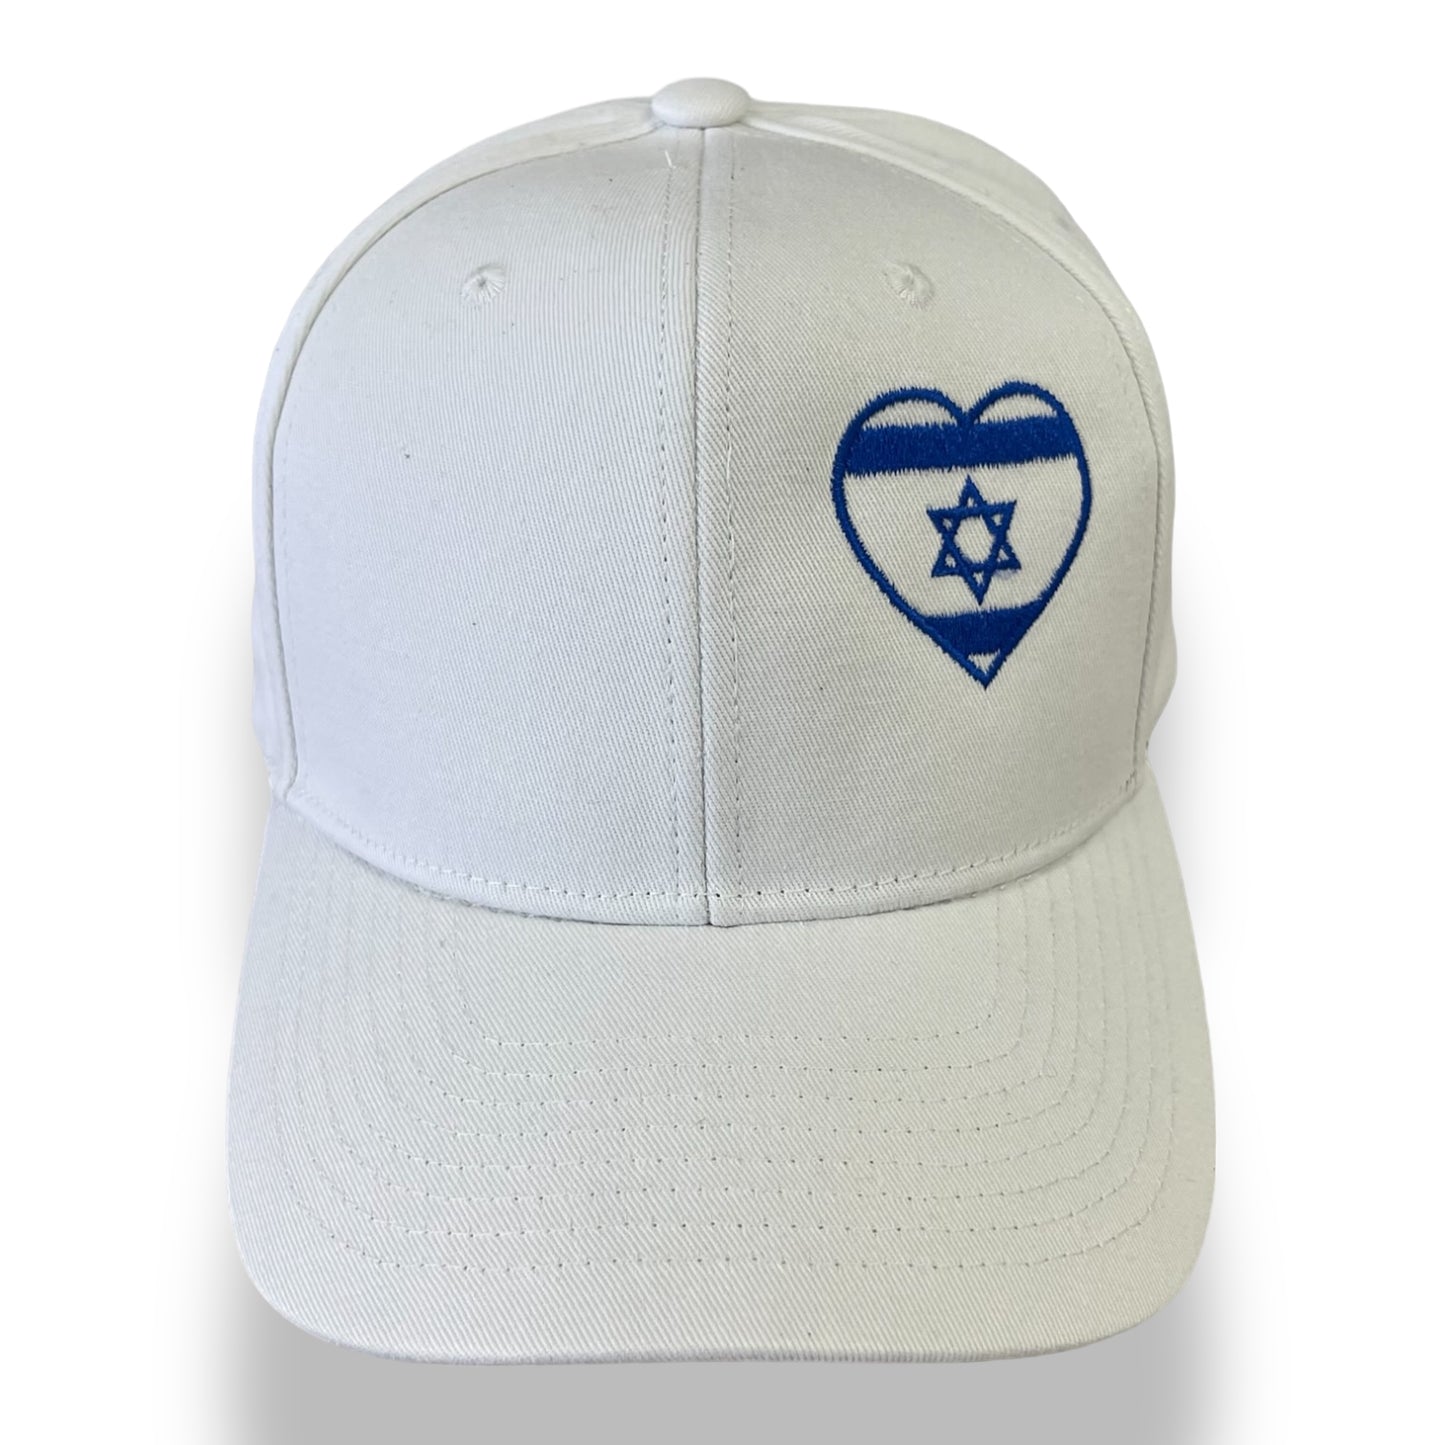 Embroidered israel flag heart shape baseball cap